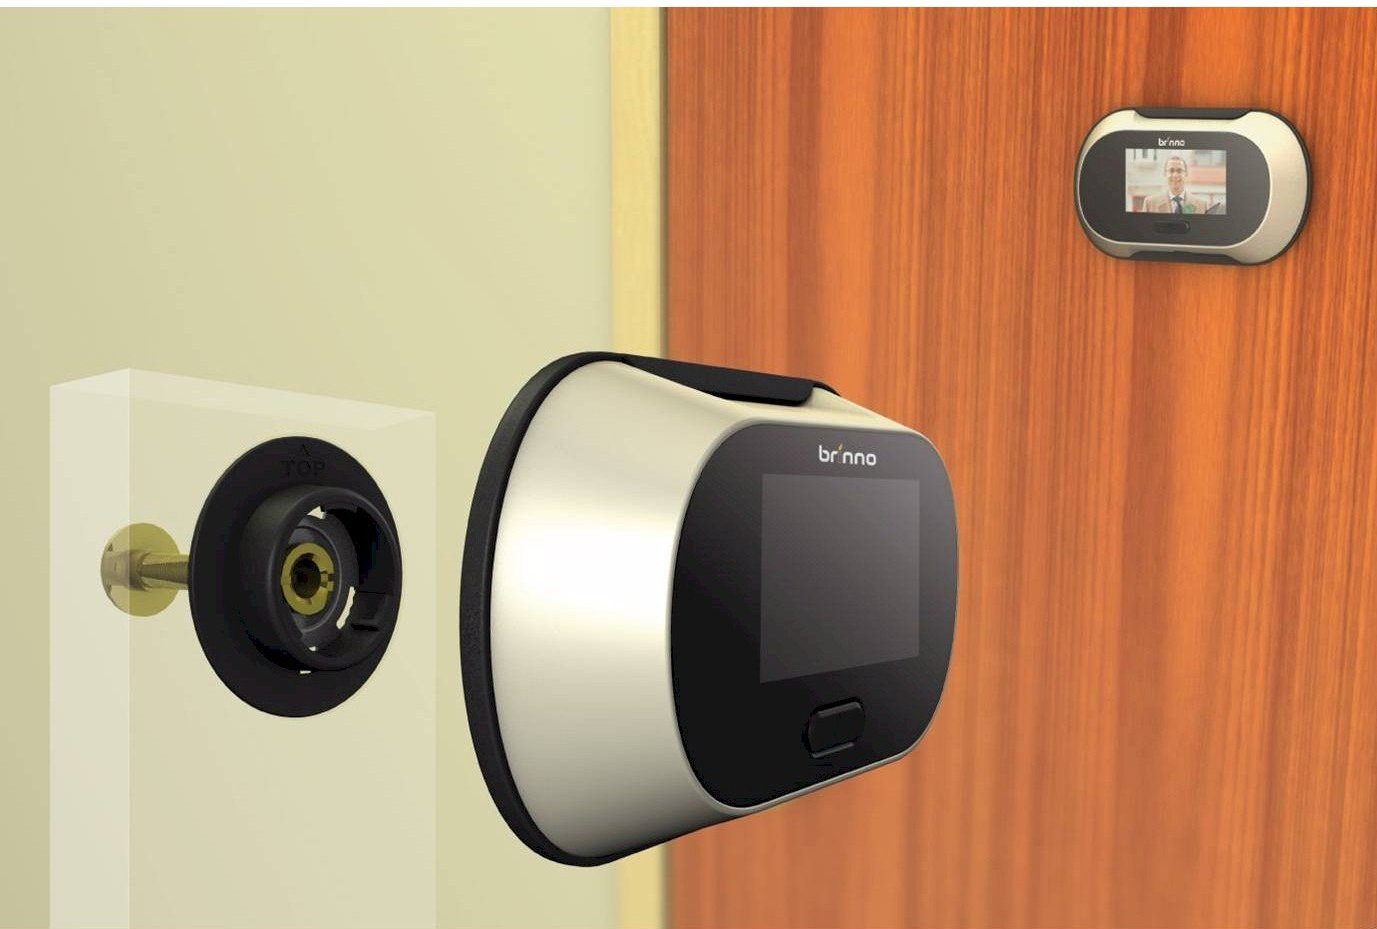 Глазок с камерой и датчиком движения. Видеоглазок a32d. Digital Door viewer видеоглазок. Видеоглазок для входной двери WIFI. Видеоглазок проводной для входной двери.